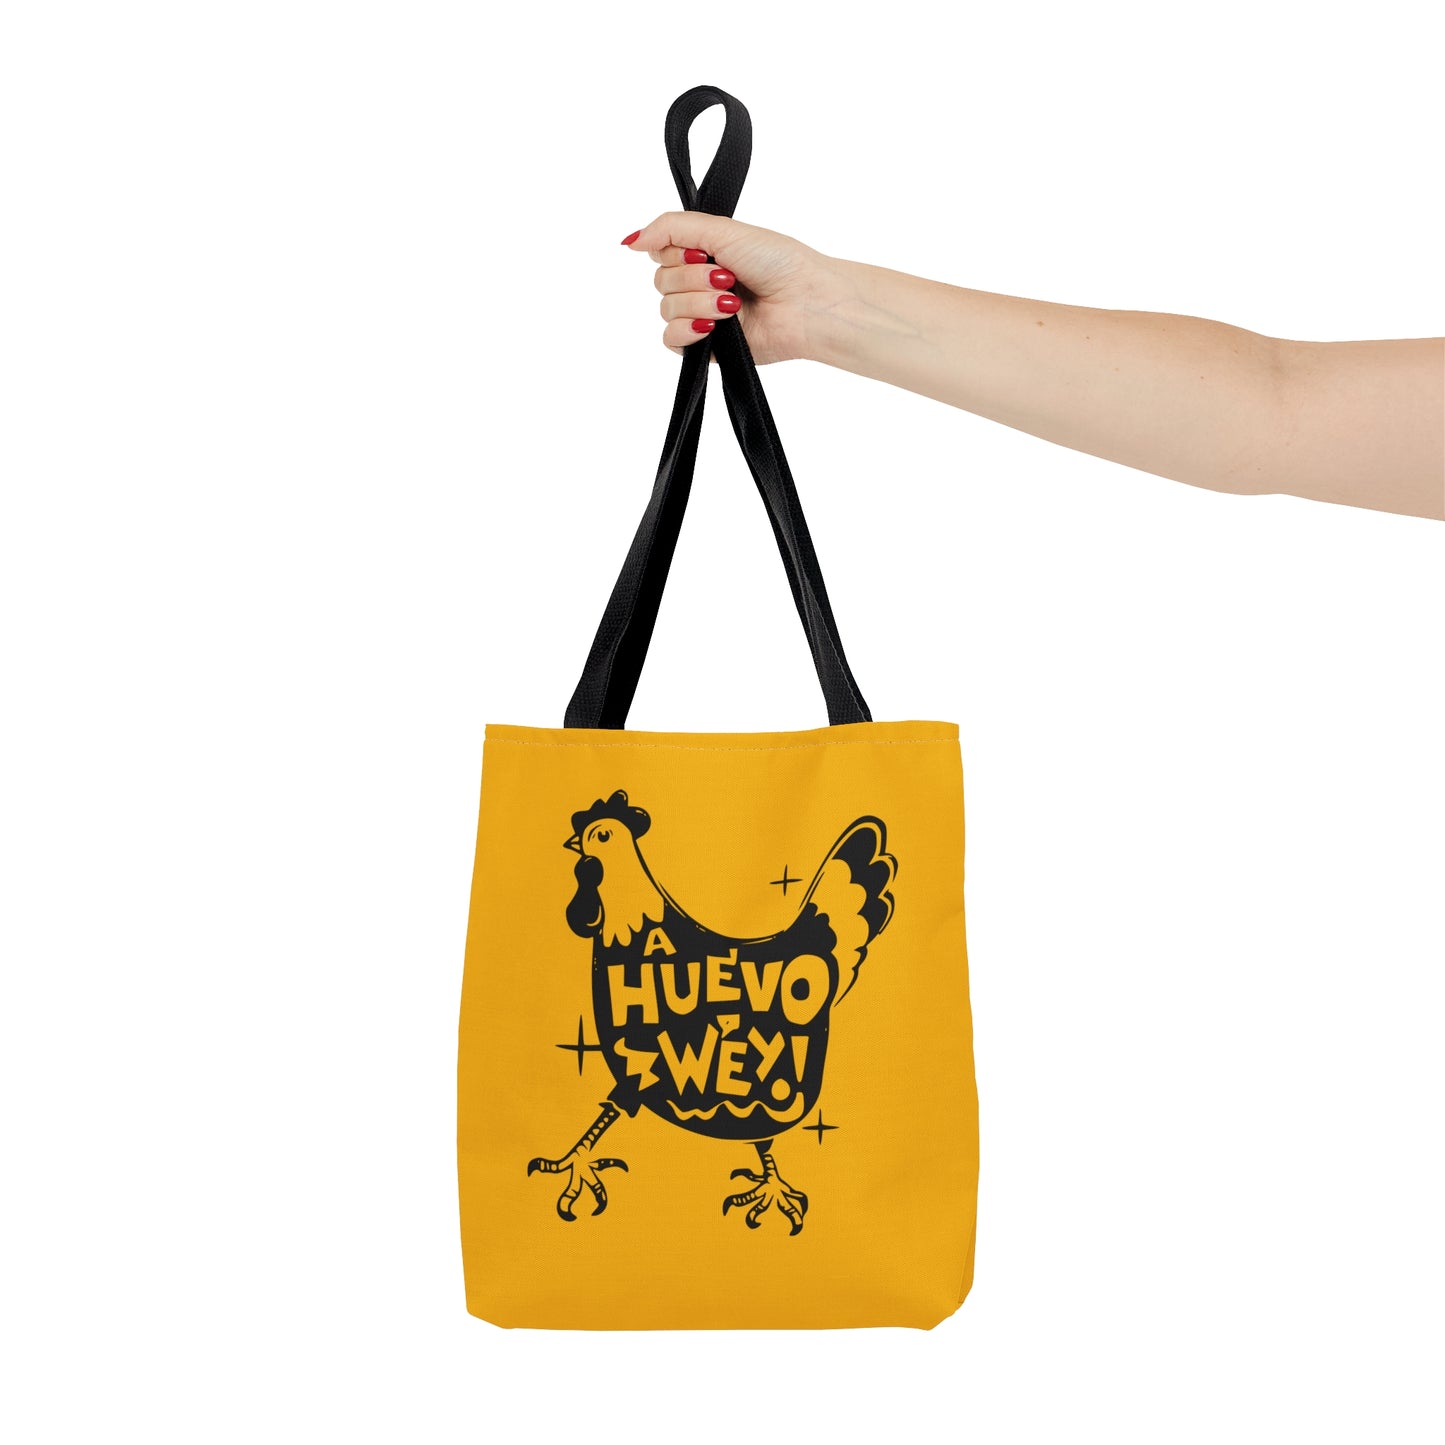 A Huevo Wey Tote Bag